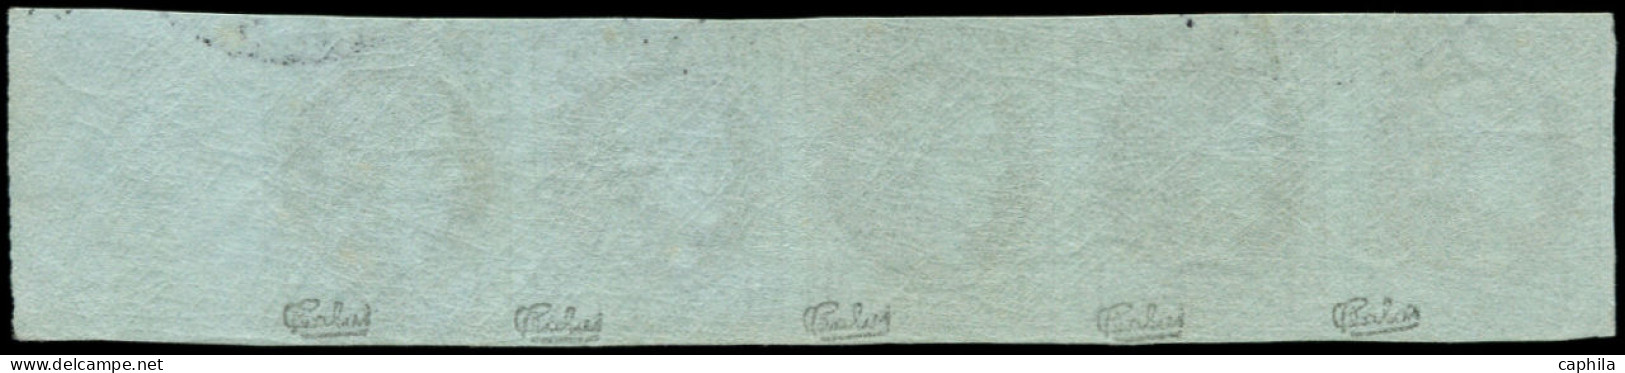 O FRANCE - Poste - 39A, Report 1, Bande De 5 Verticale, Bdf, Oblitération De Complaisance: 1c. Olive - 1870 Bordeaux Printing